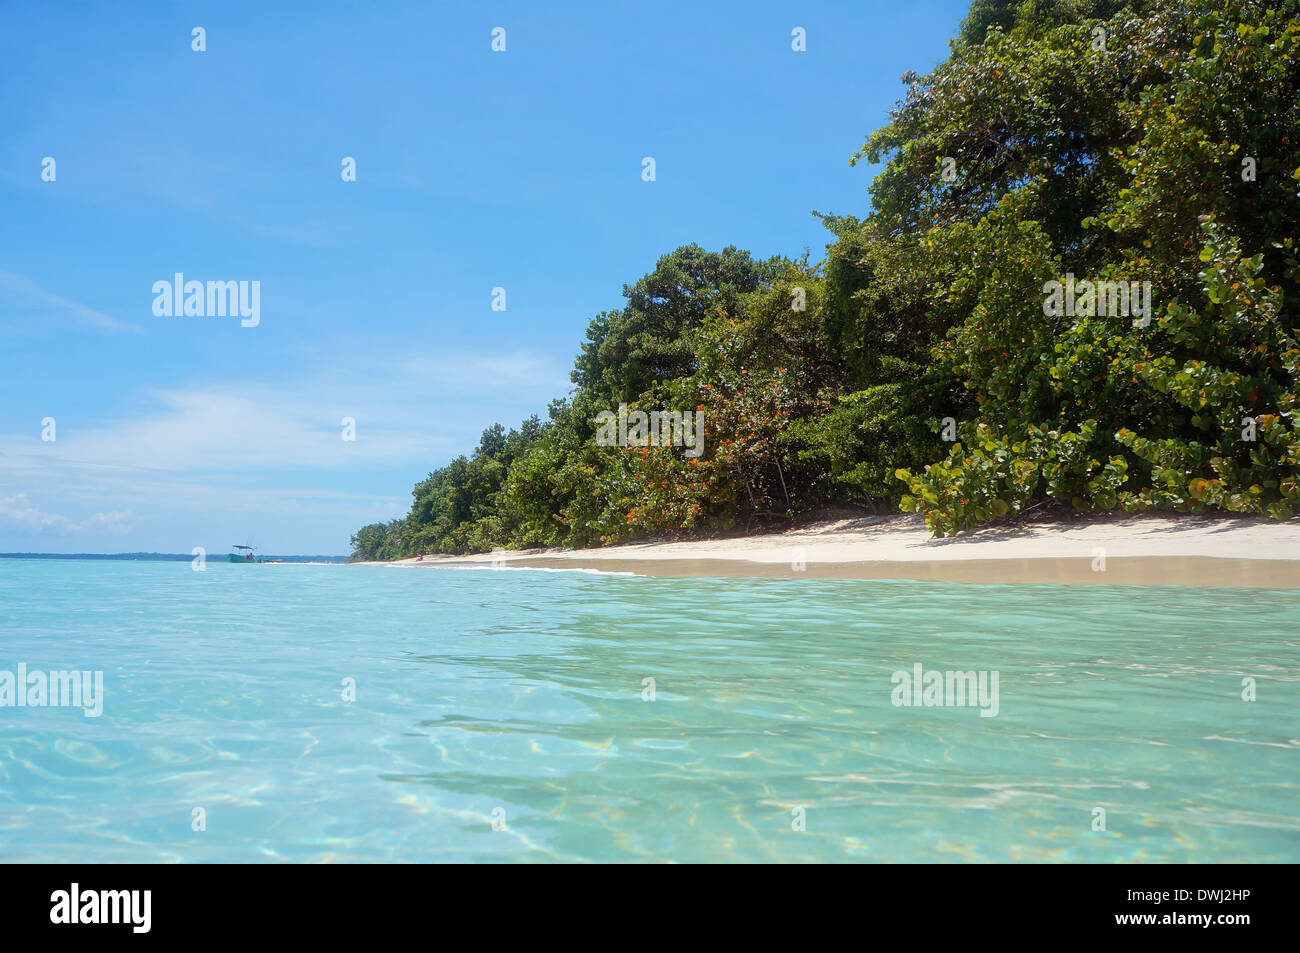 Spiaggia tropicale con vegetazione lussureggiante, preso dalla superficie di acqua, Bocas del Toro, Mar dei Caraibi, isole Zapatillas, Panama Foto Stock